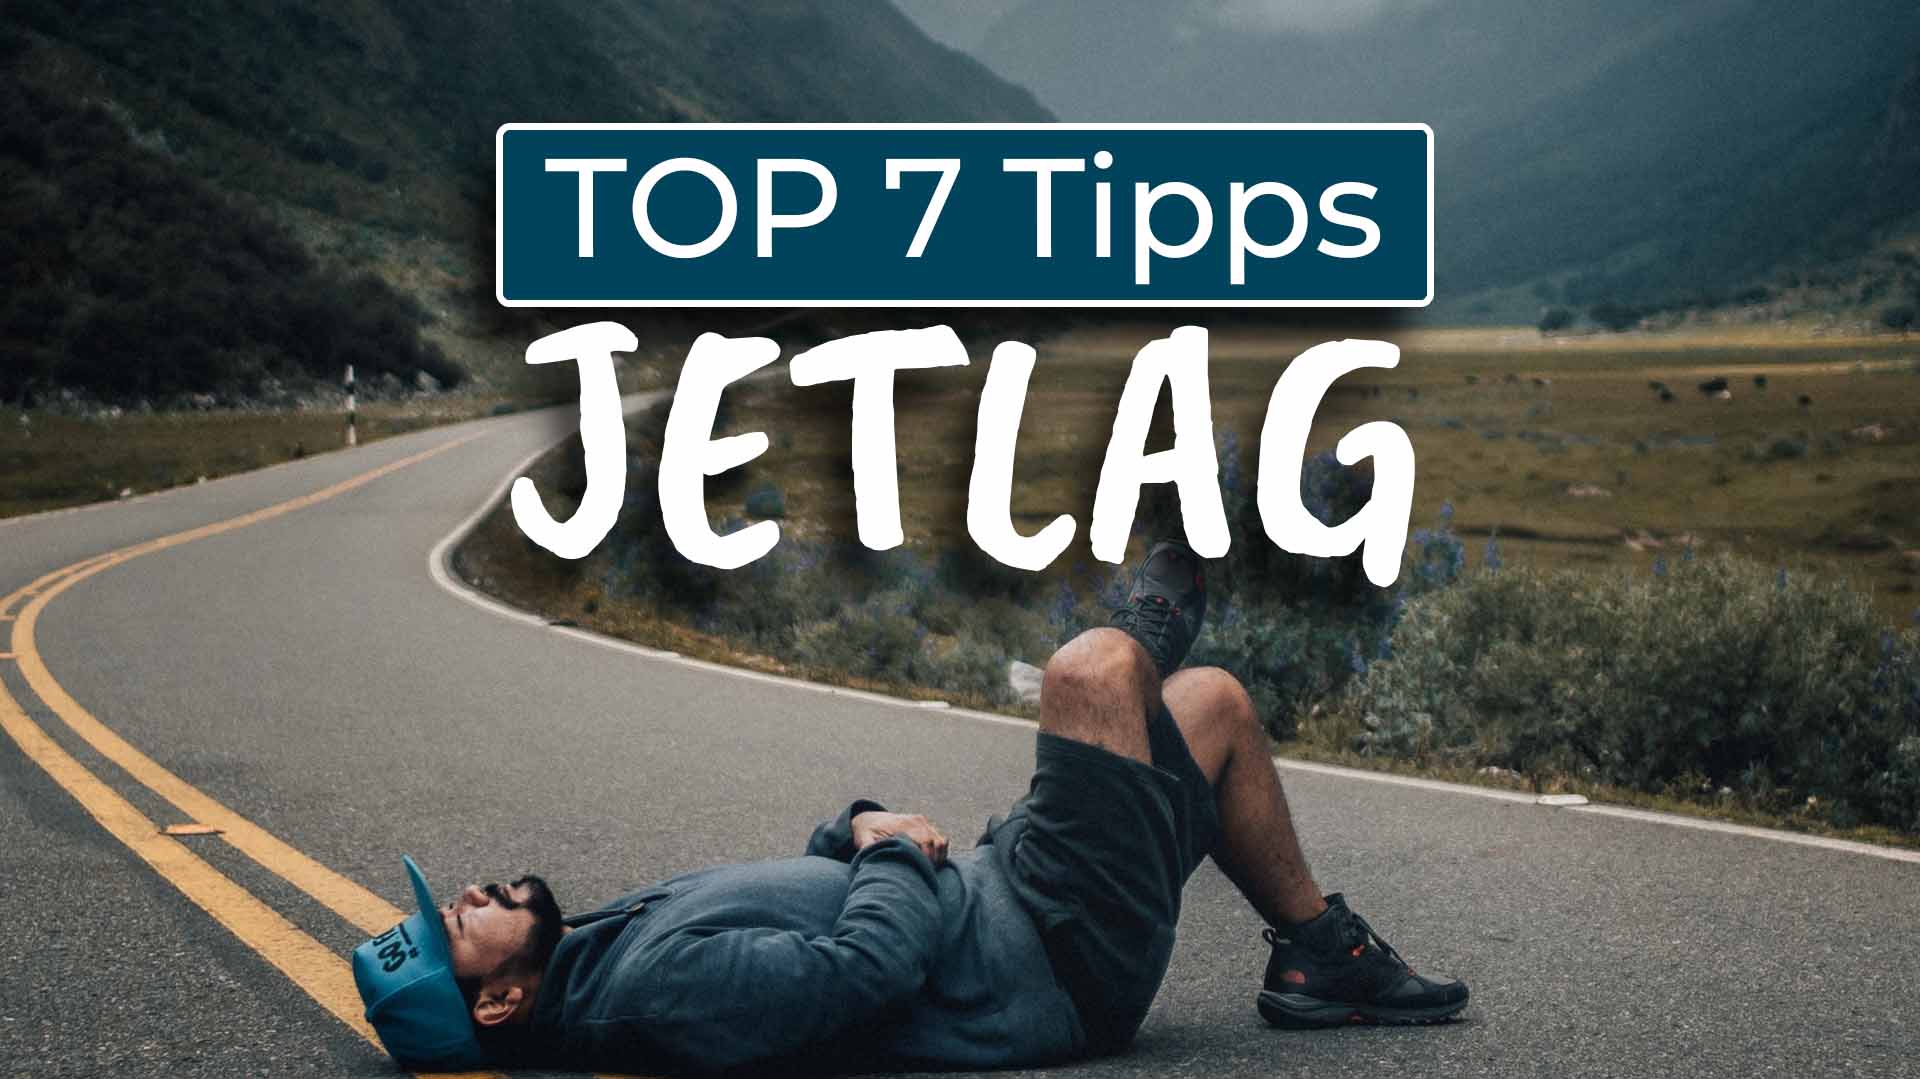 Top 7 Tipps gegen Jetlag Kanada - Cover